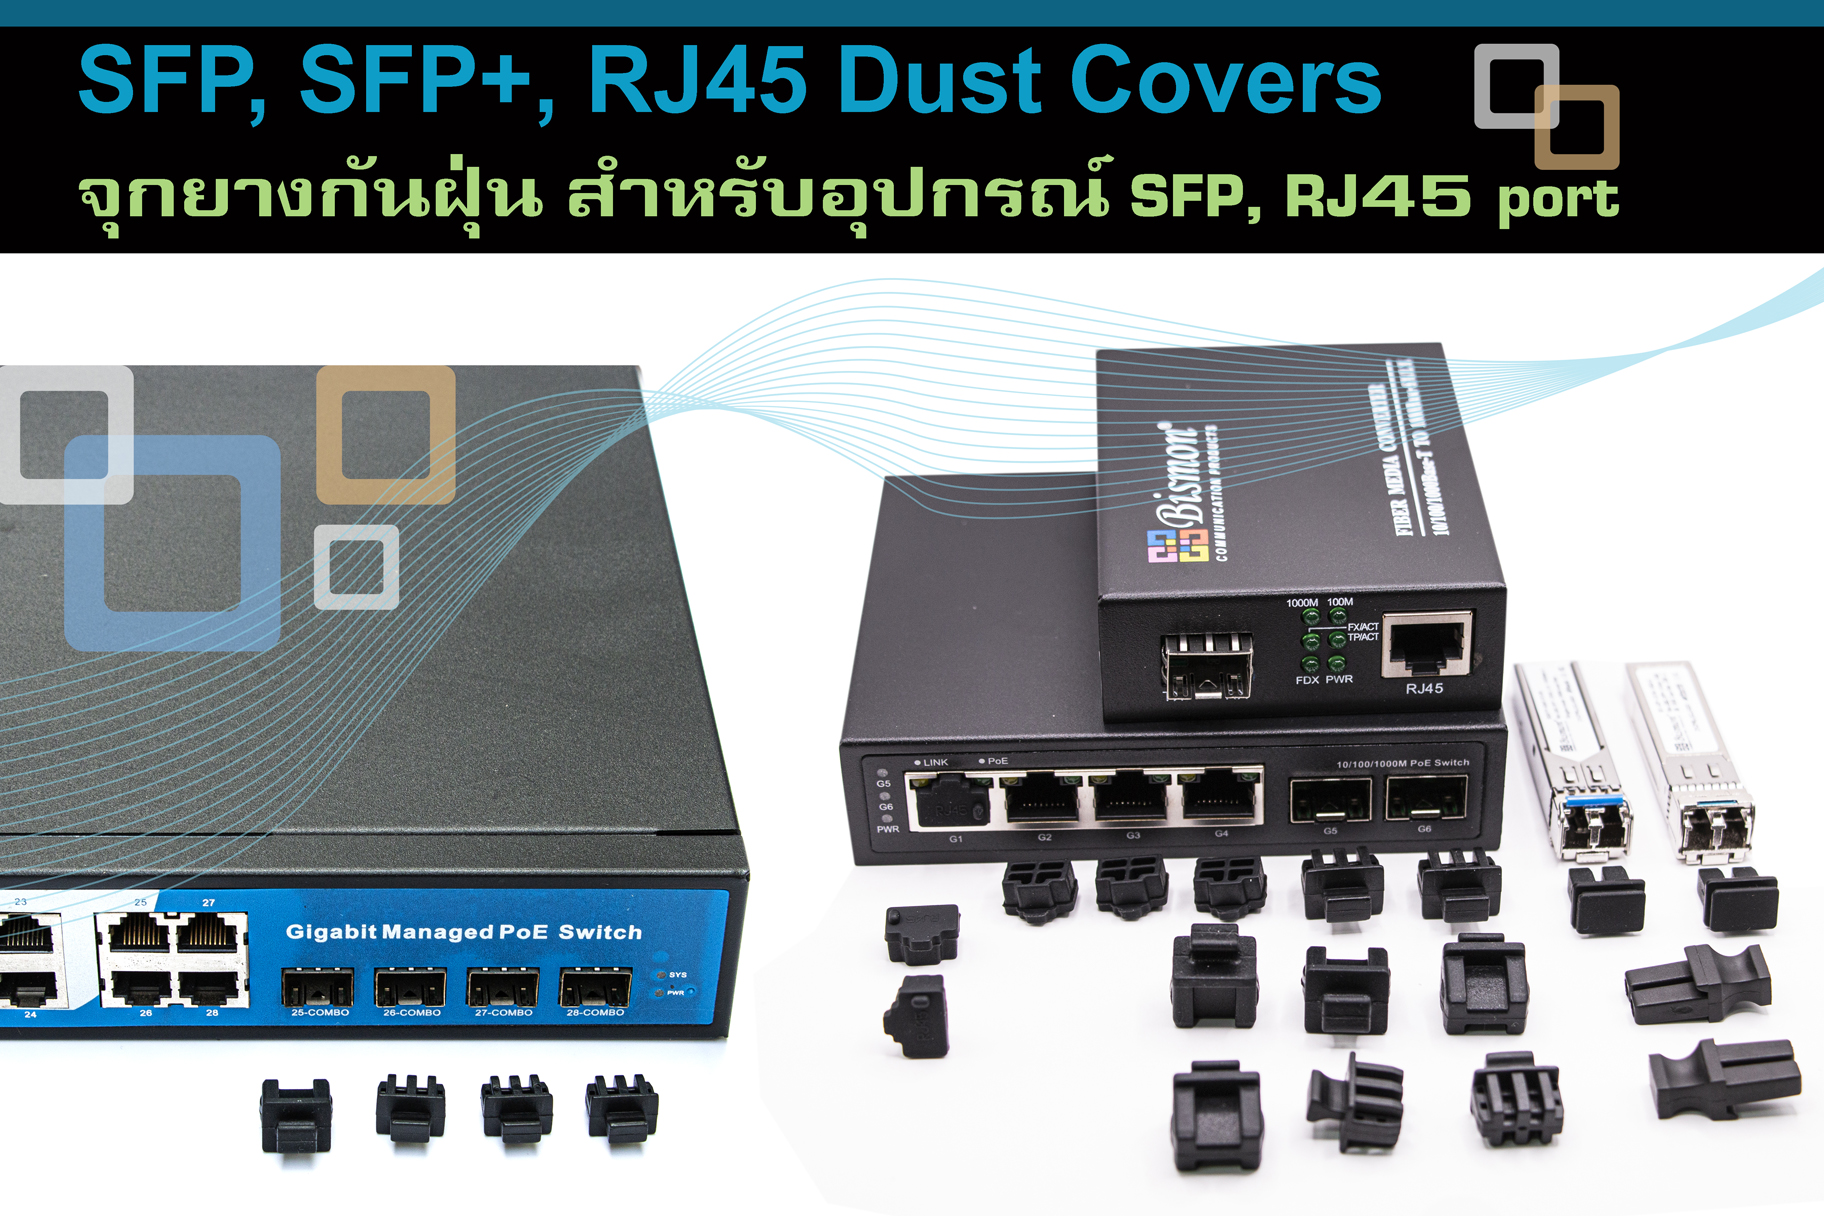 SFP SFP+ XFP RJ45 Dust Cover ชุดอุปกรณ์ป้องกันฝุ่นละอองสำหรับระบบเครือข่าย